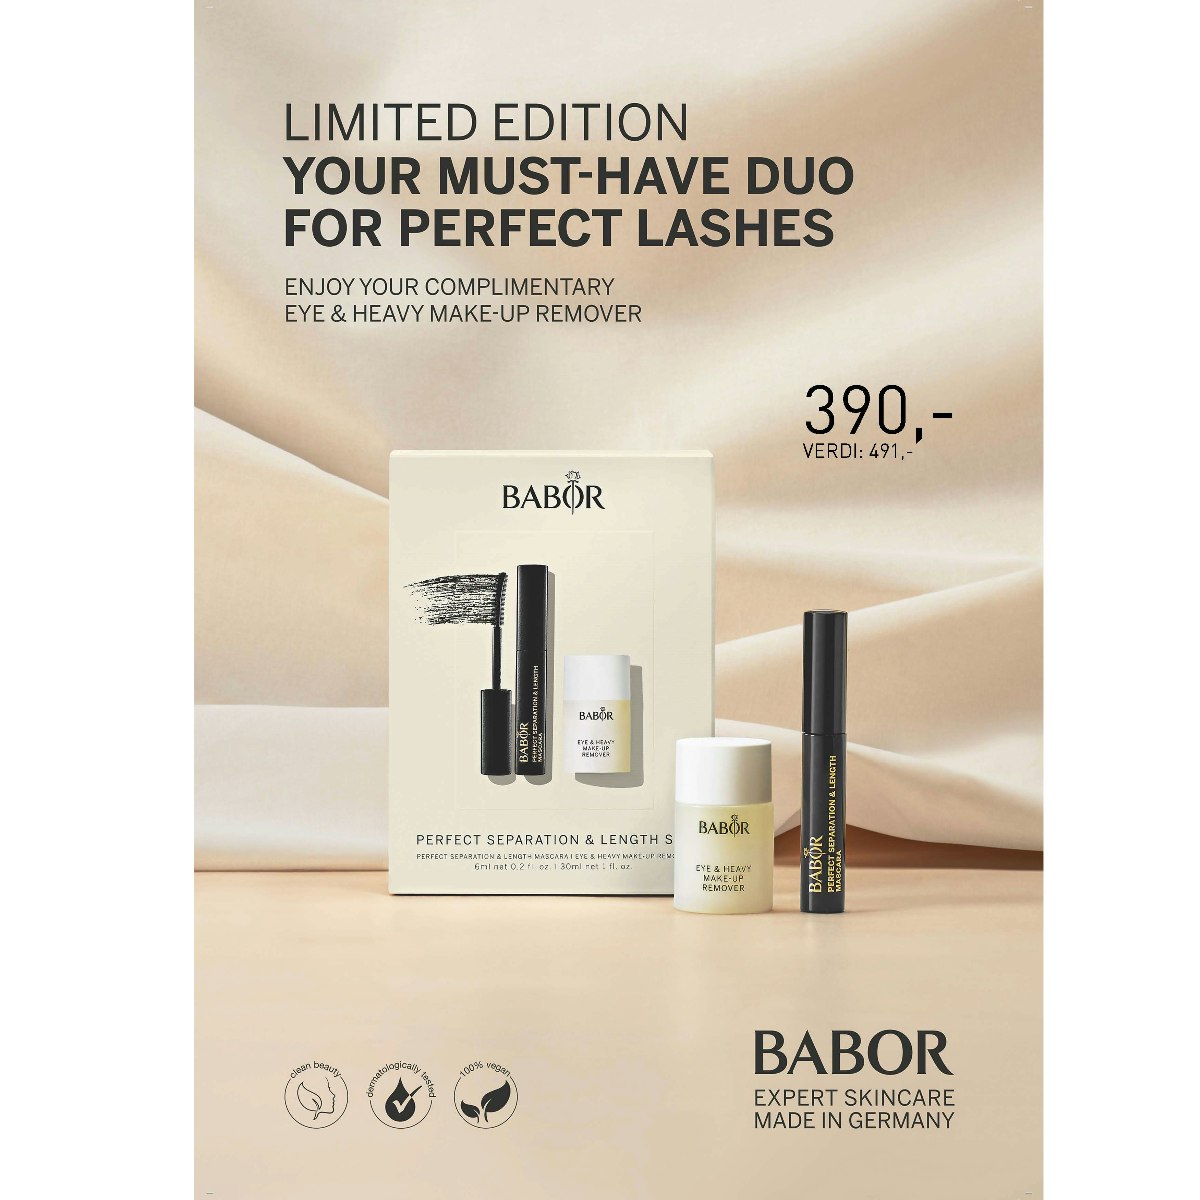 BABOR Duo – Mascara + heavy Makeup Remover